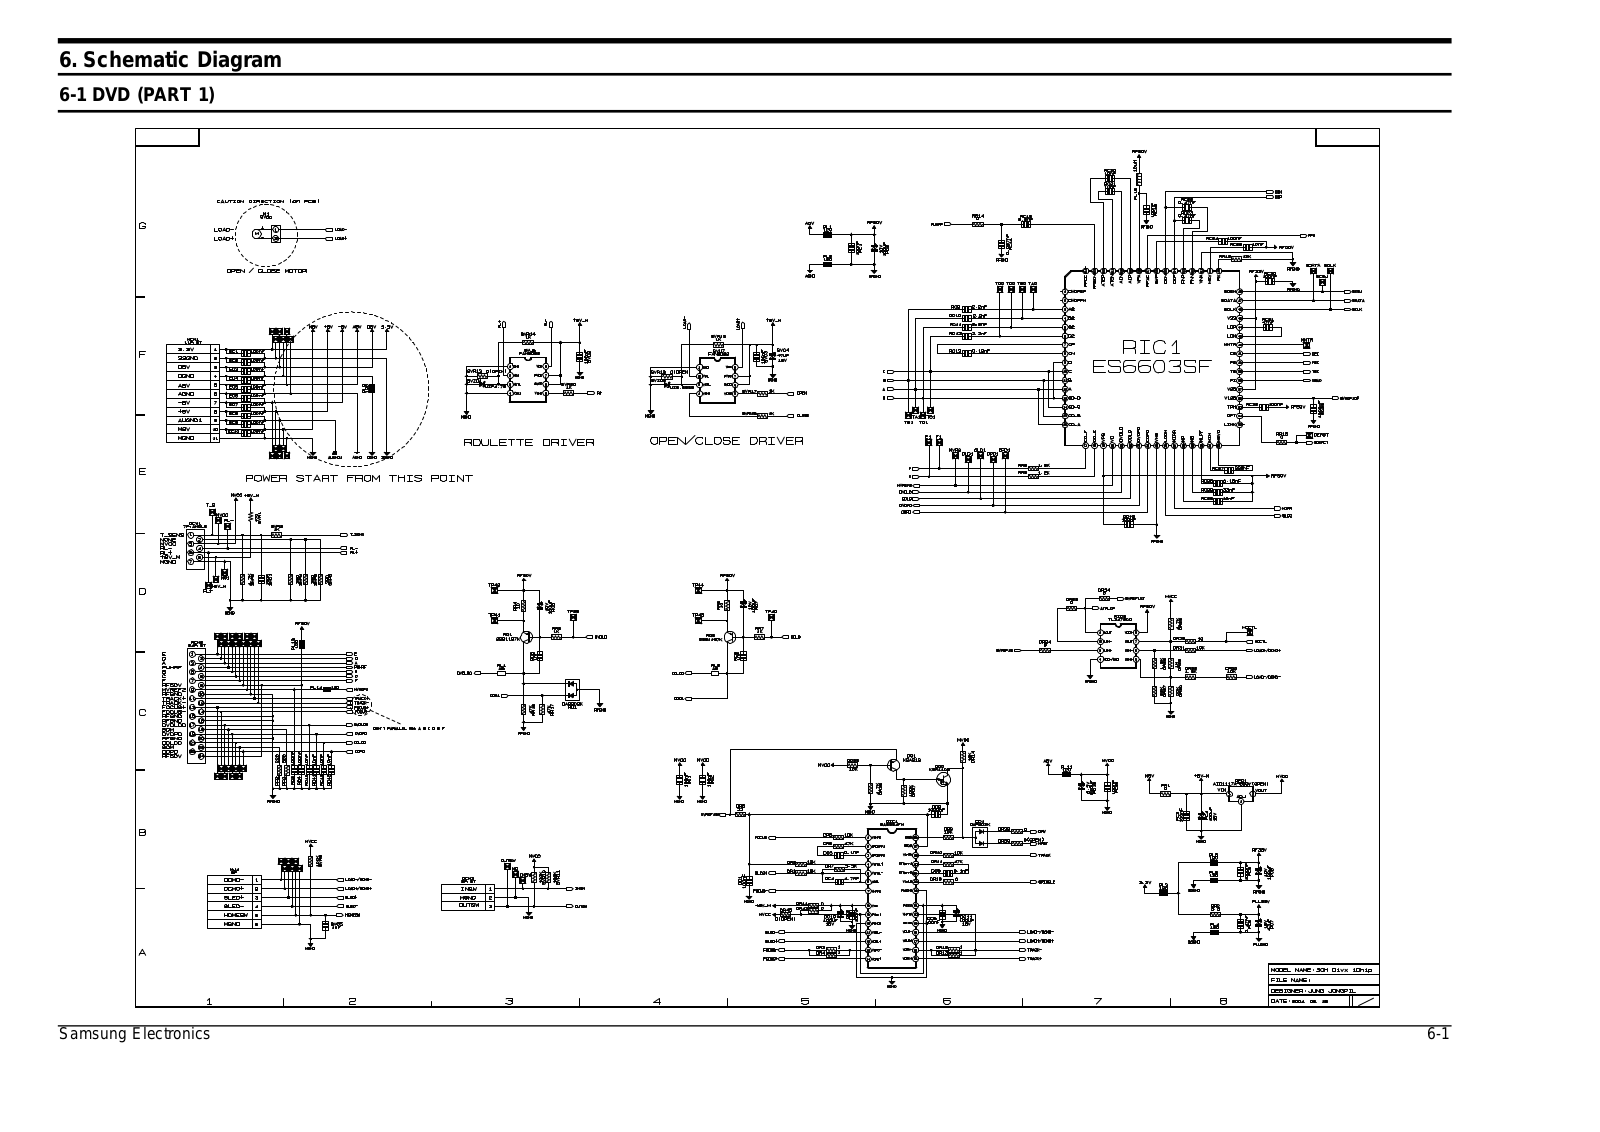 SAMSUNG MAX-KJ730, MAX-KJ740 Schematic Diagram